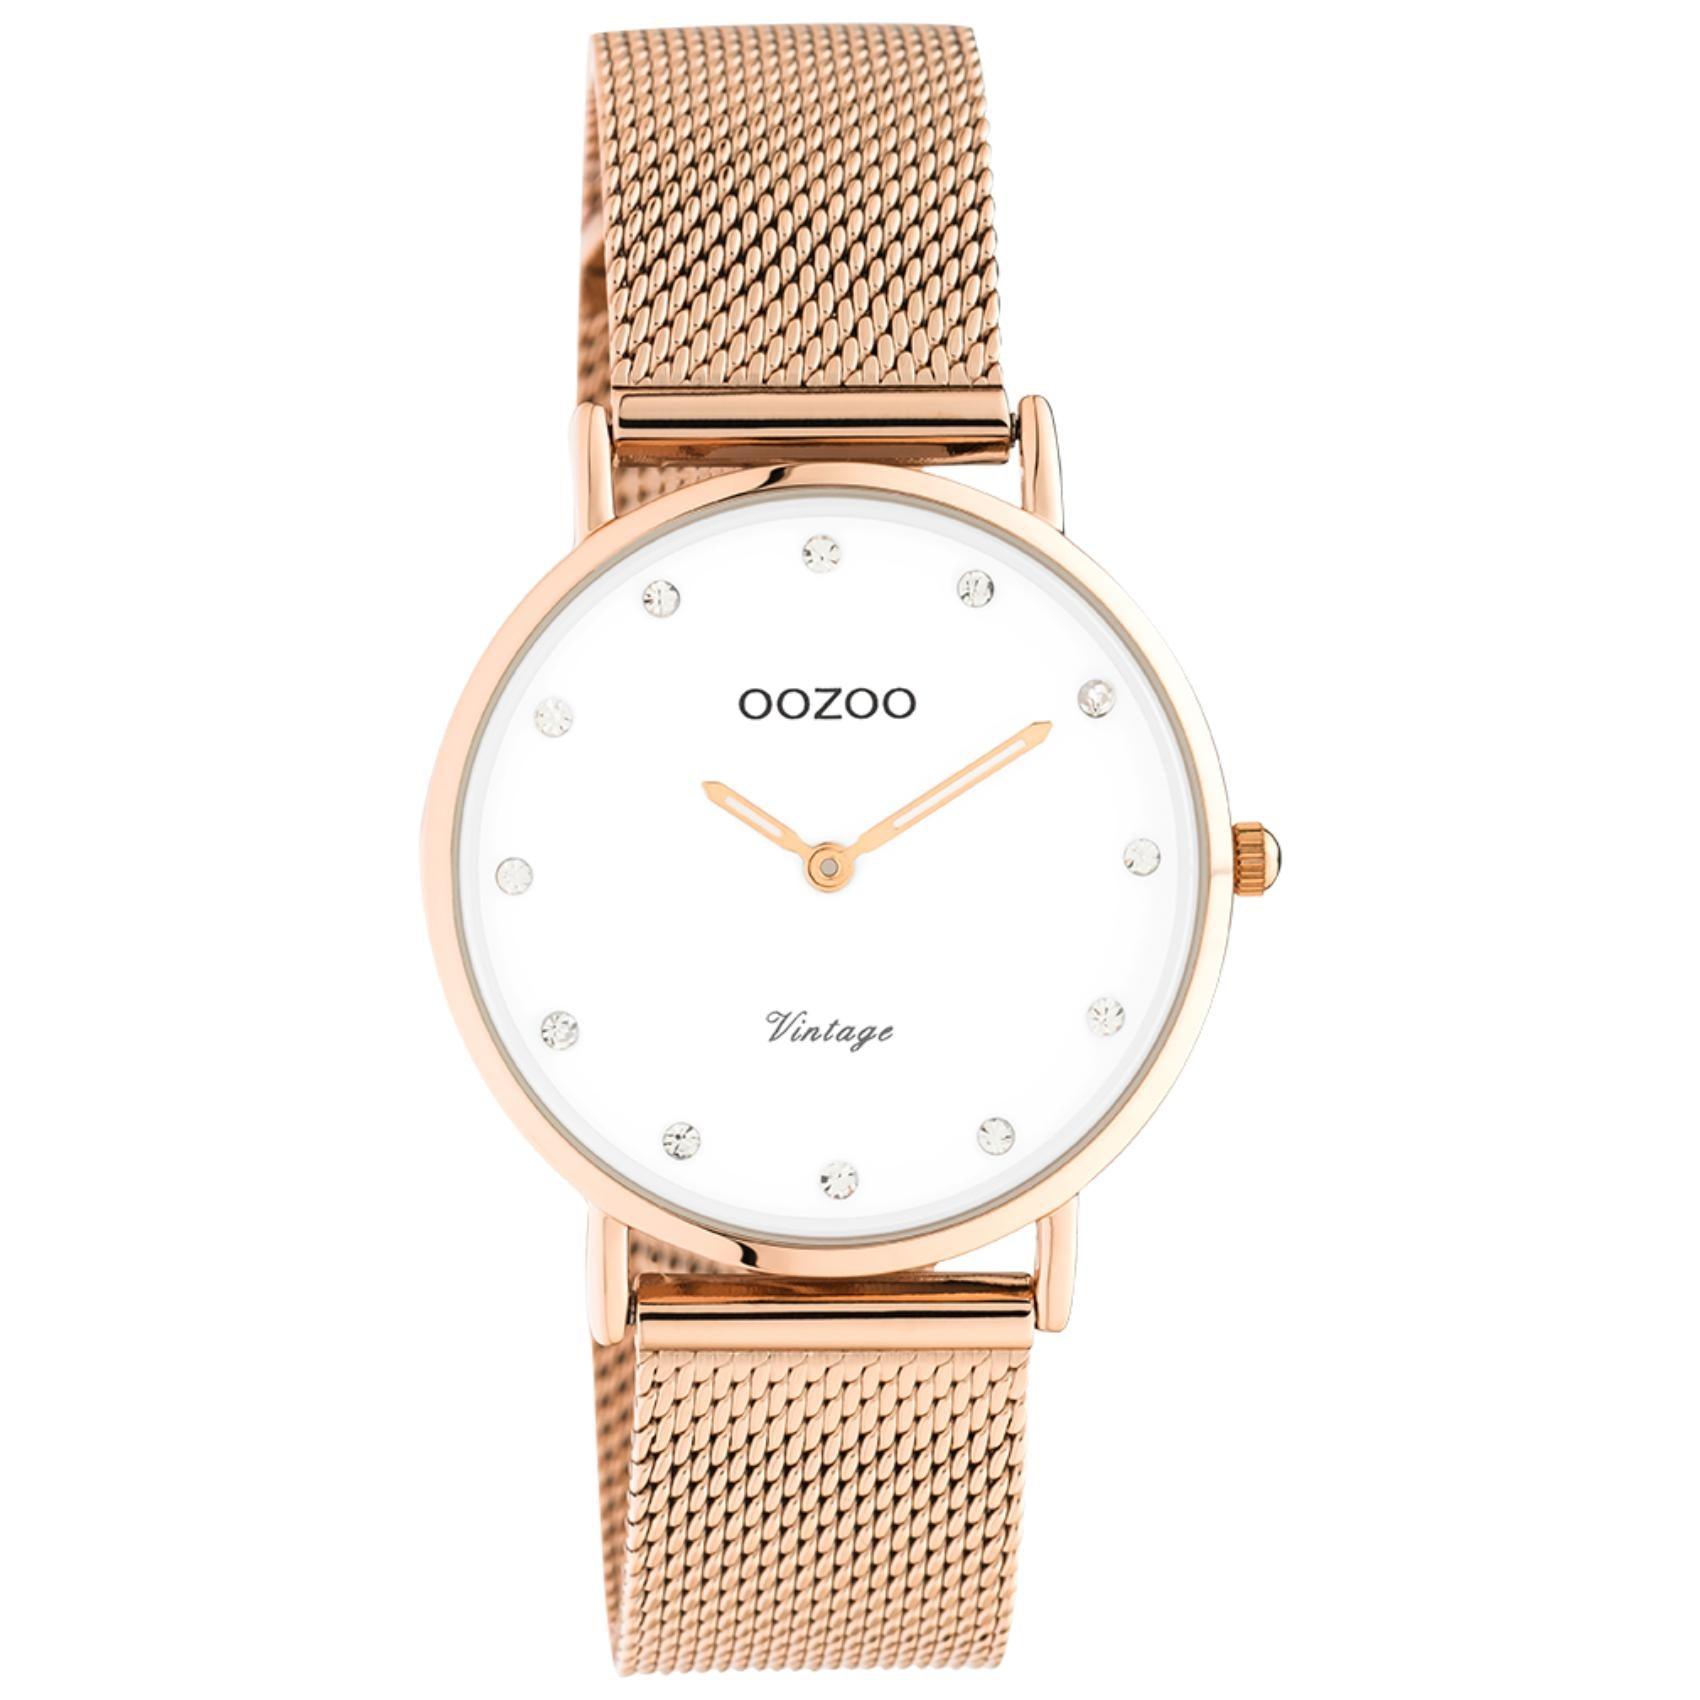 Στρογγυλό ρολόι Oozoo Vintage C20243 με ροζ χρυσό ατσάλινο μπρασελέ,άσπρο καντράν με ζιργκόν διαμέτρου 32mm και μηχανισμό μπαταρίας quartz.